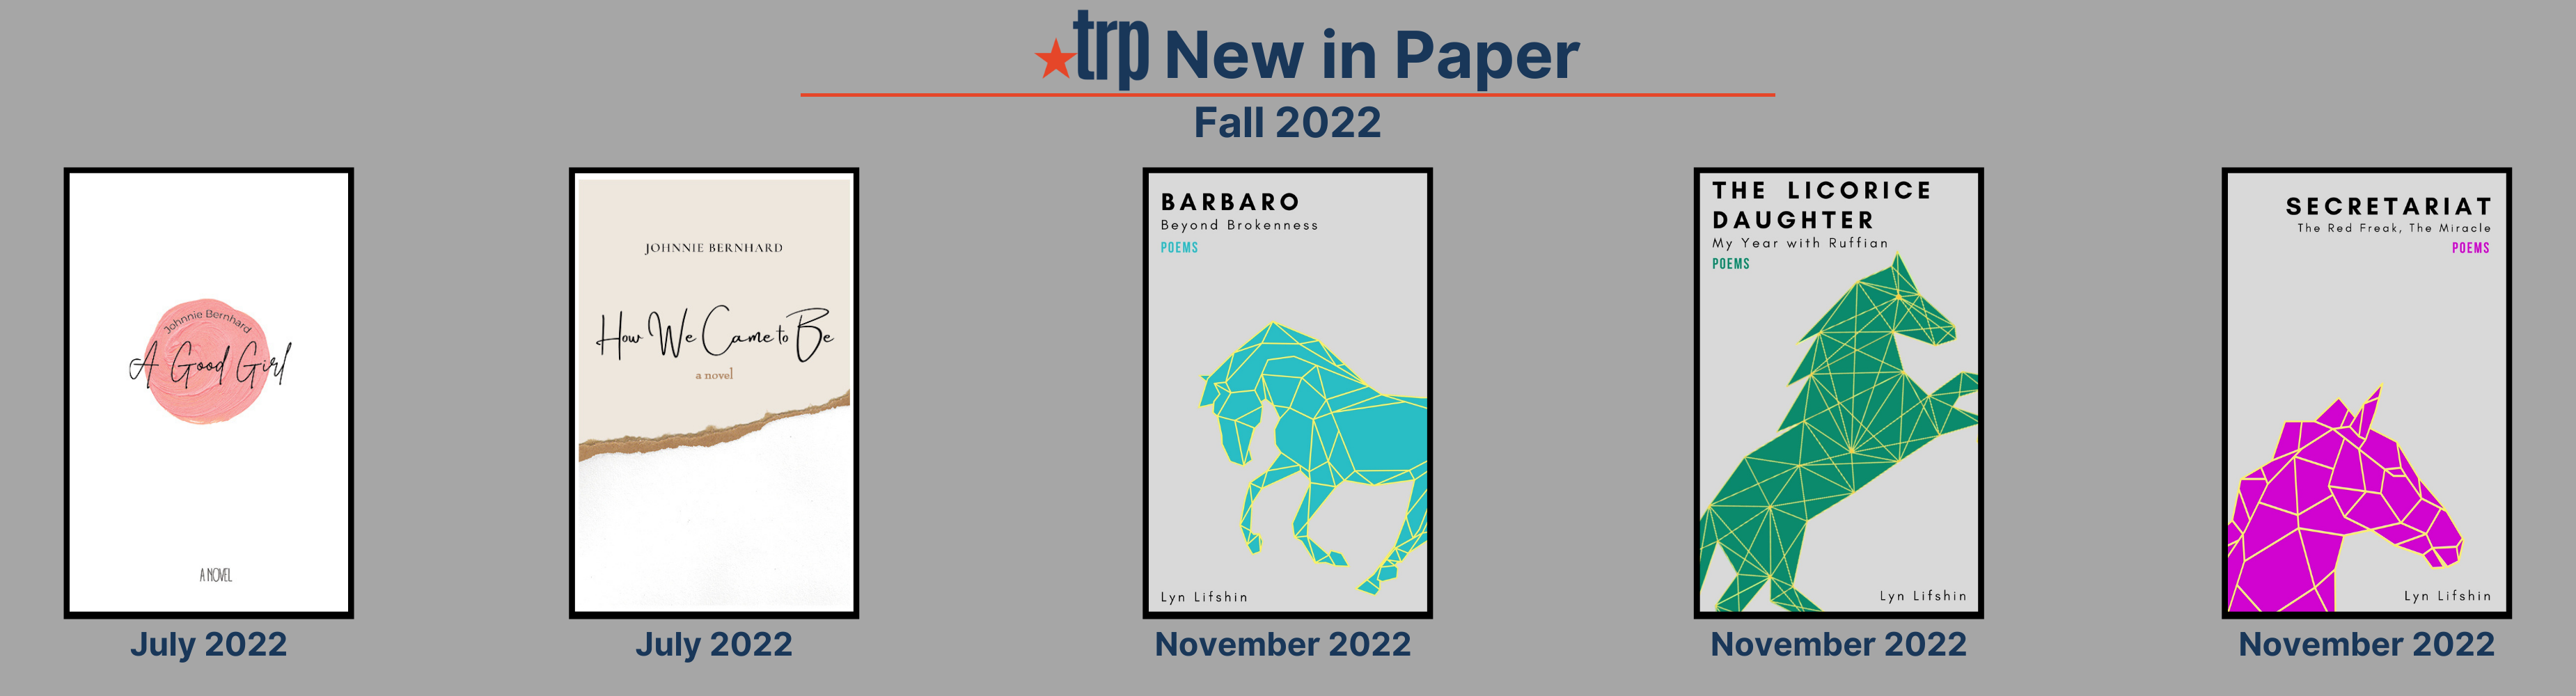 TRP Fall 2022 New in Paper: Johnnie Bernhard 